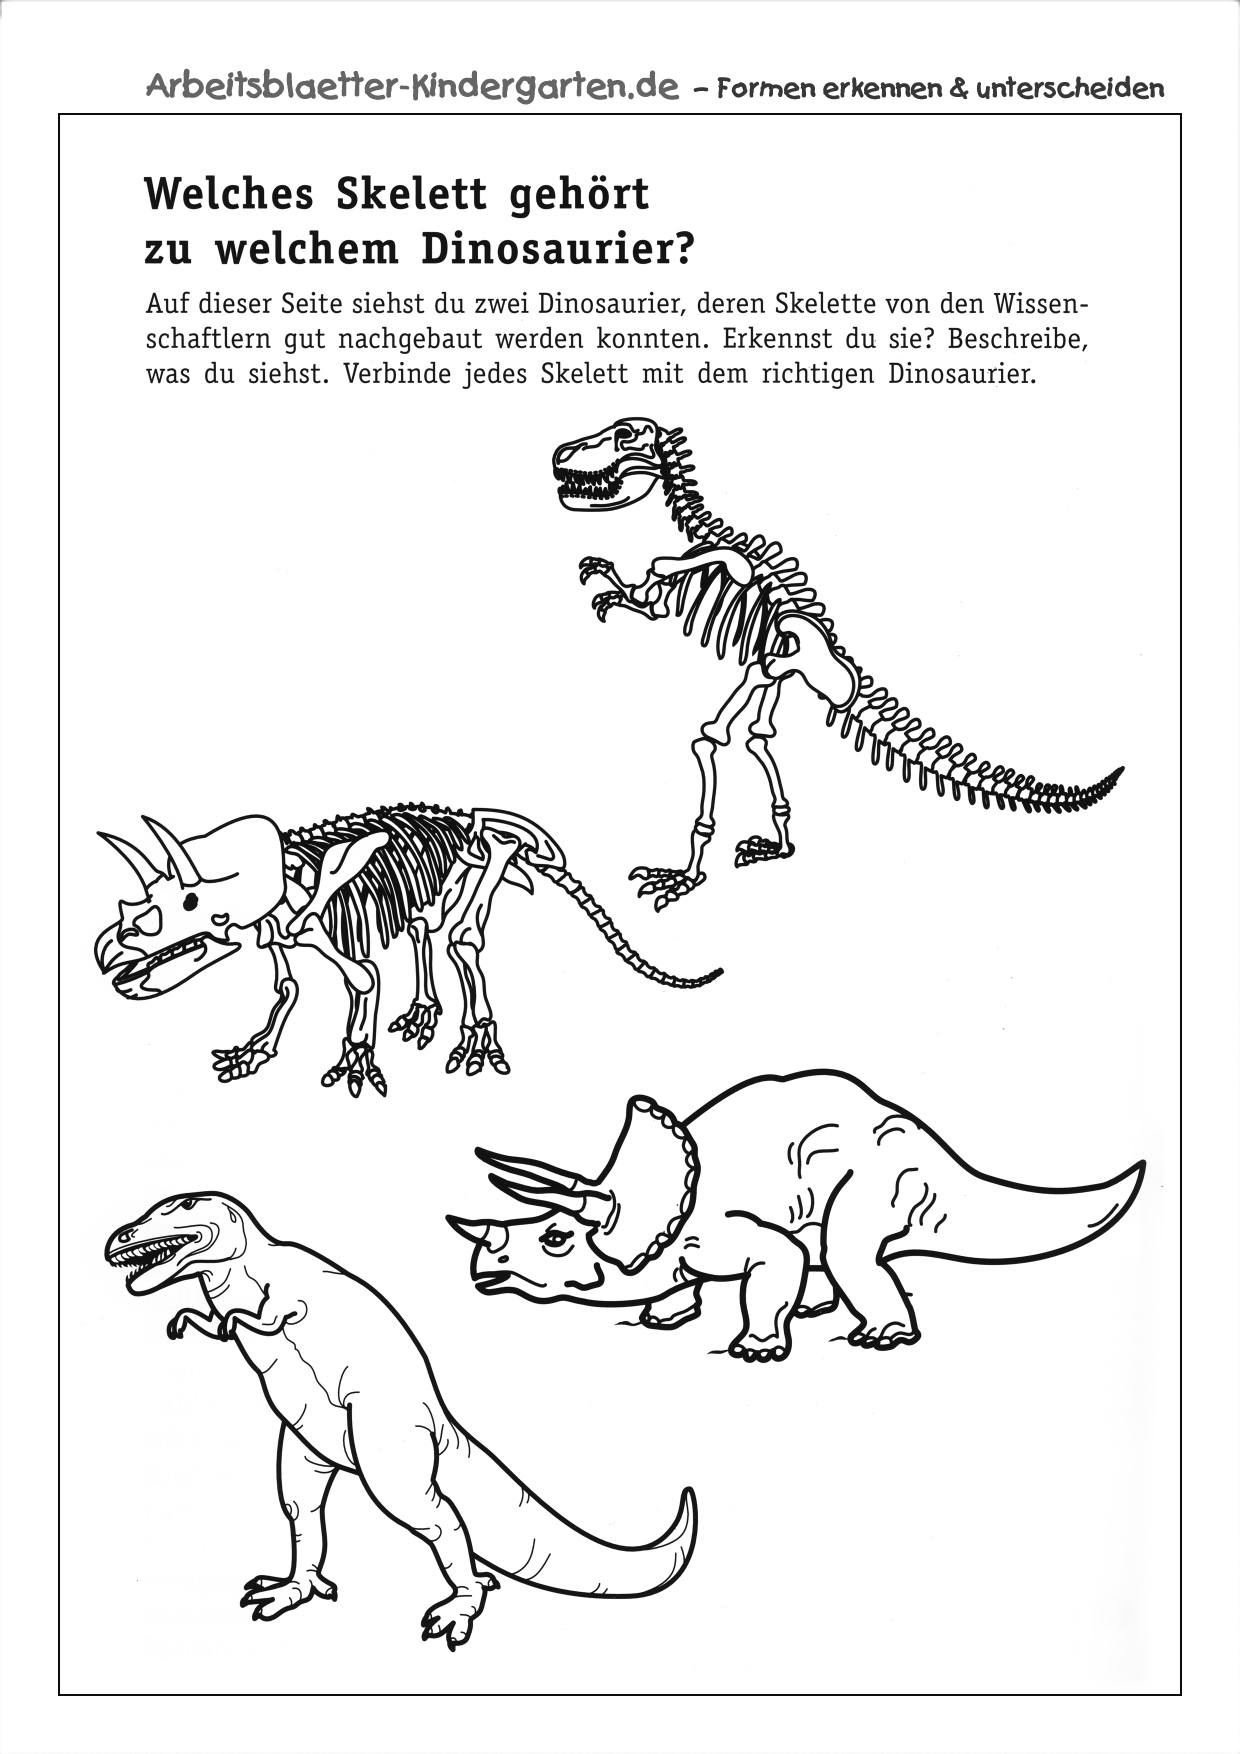 Arbeitsblatt Dinosaurier-Skelett erkennen